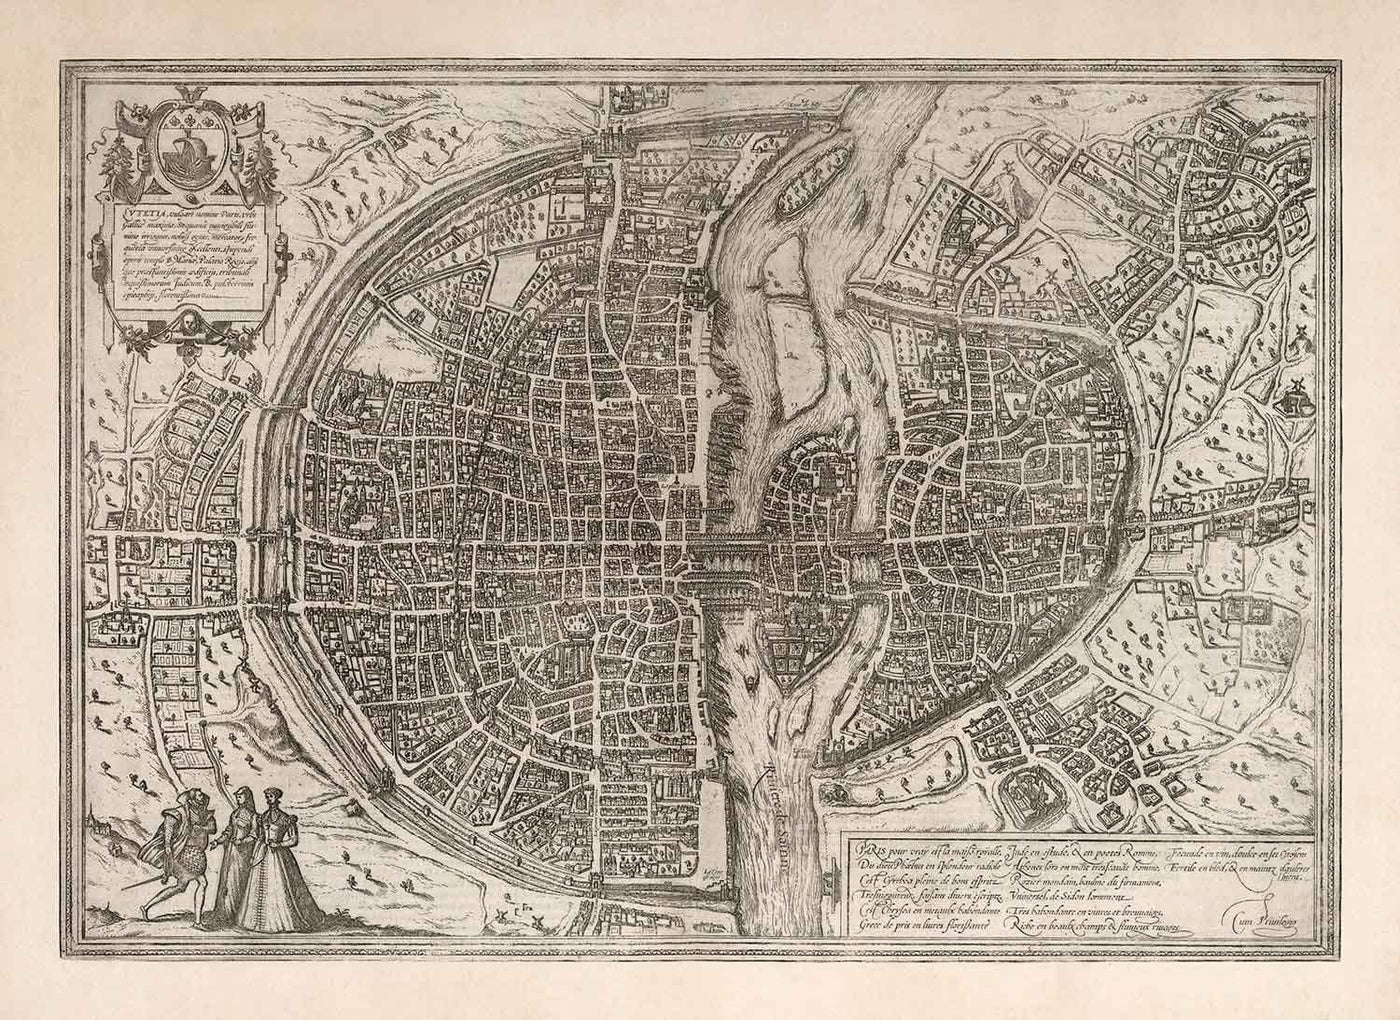 Old monochrome Carte of Paris, 1572 par Braun - Notre Dame, Sainte Chapelle, Bastille, Seine, cathédrale, murs de la ville